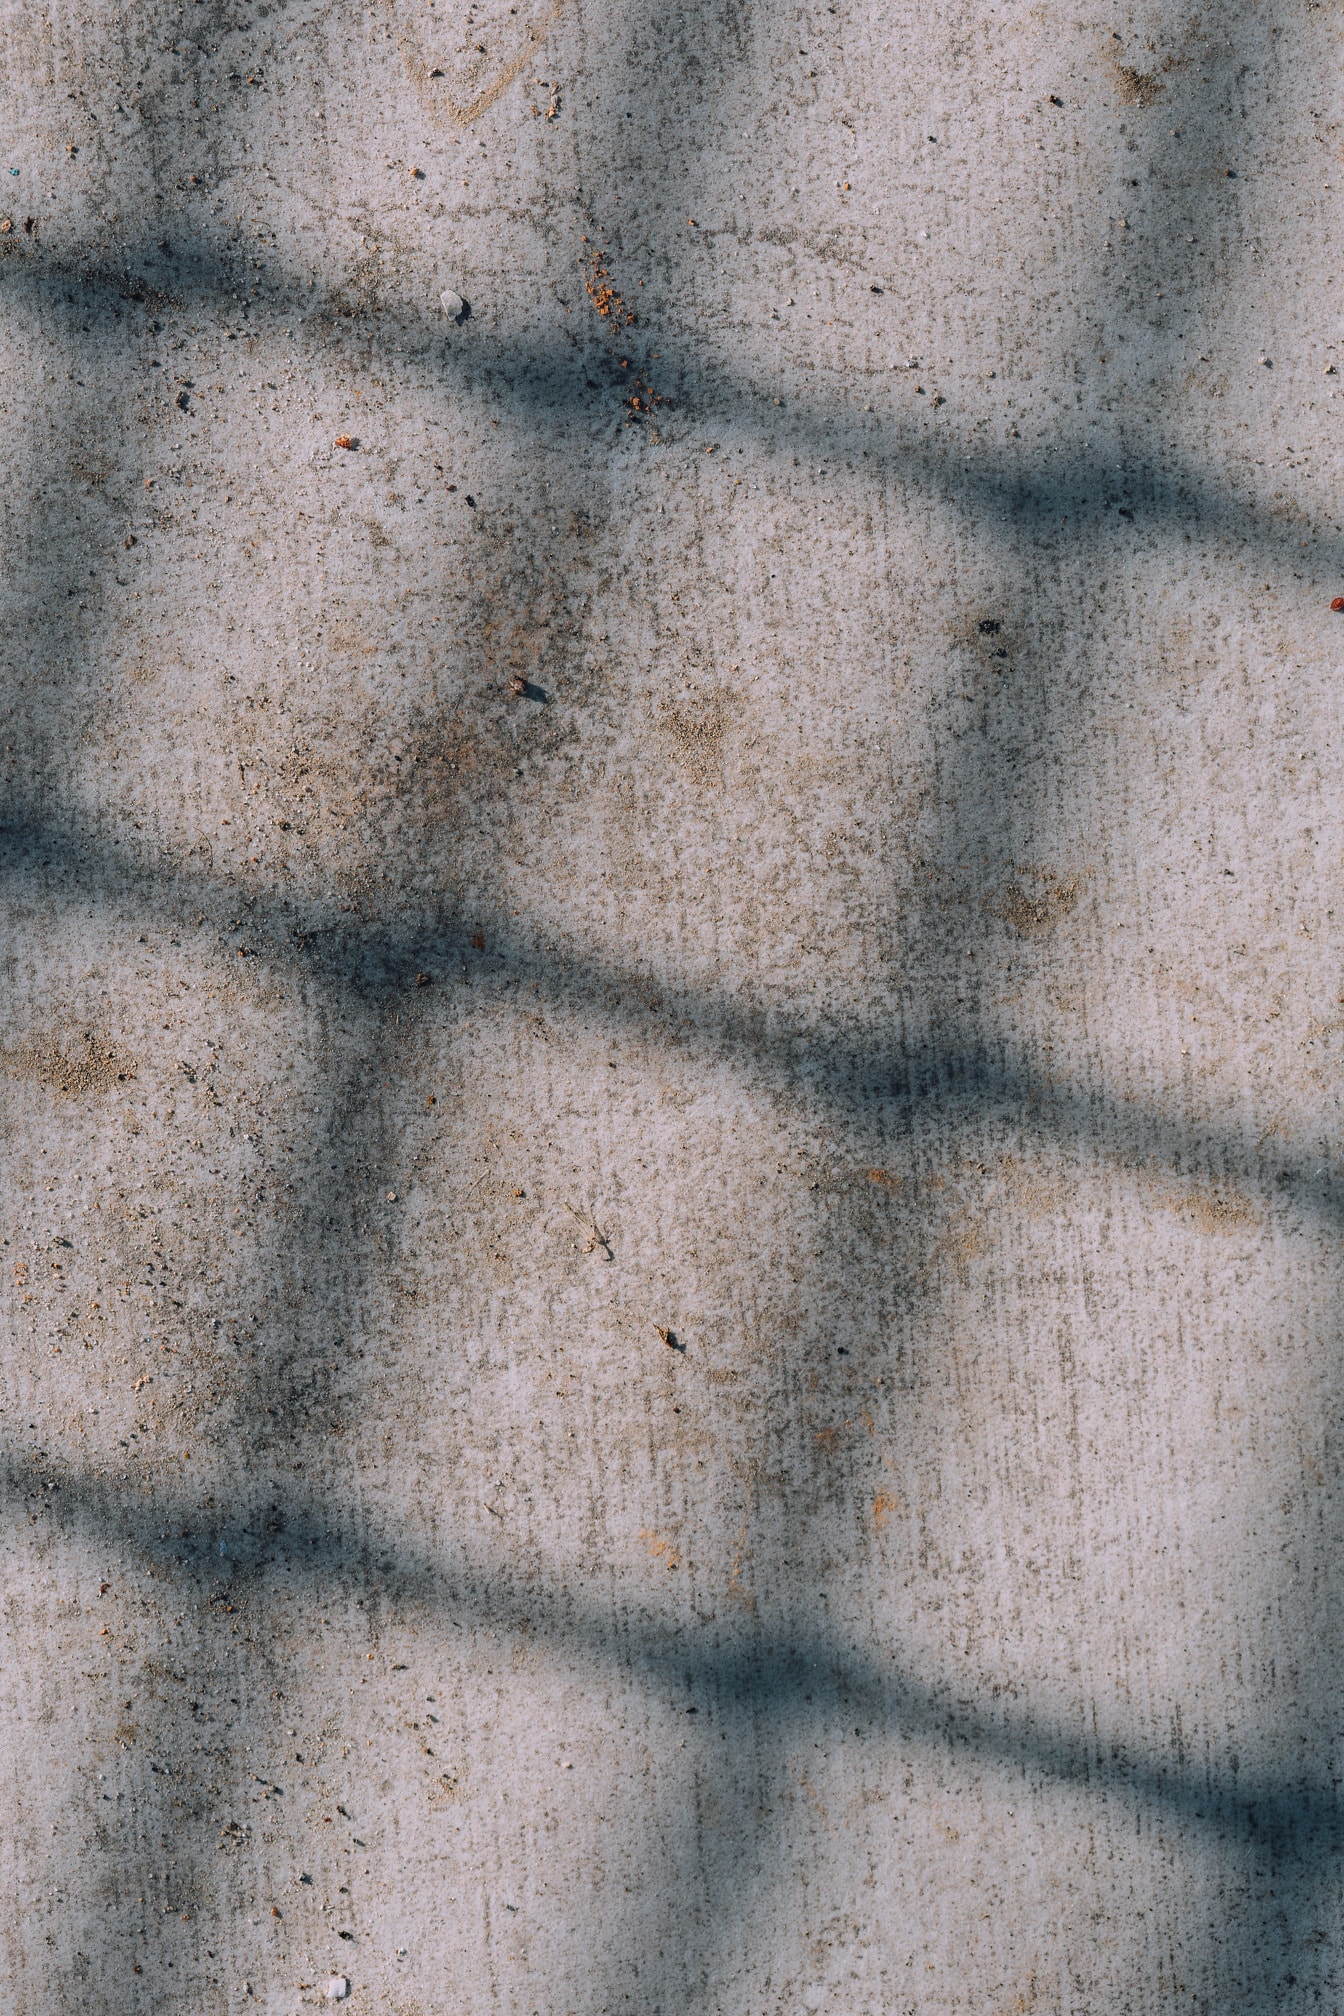 Sombra na forma de um retângulo em uma superfície suja de concreto com manchas